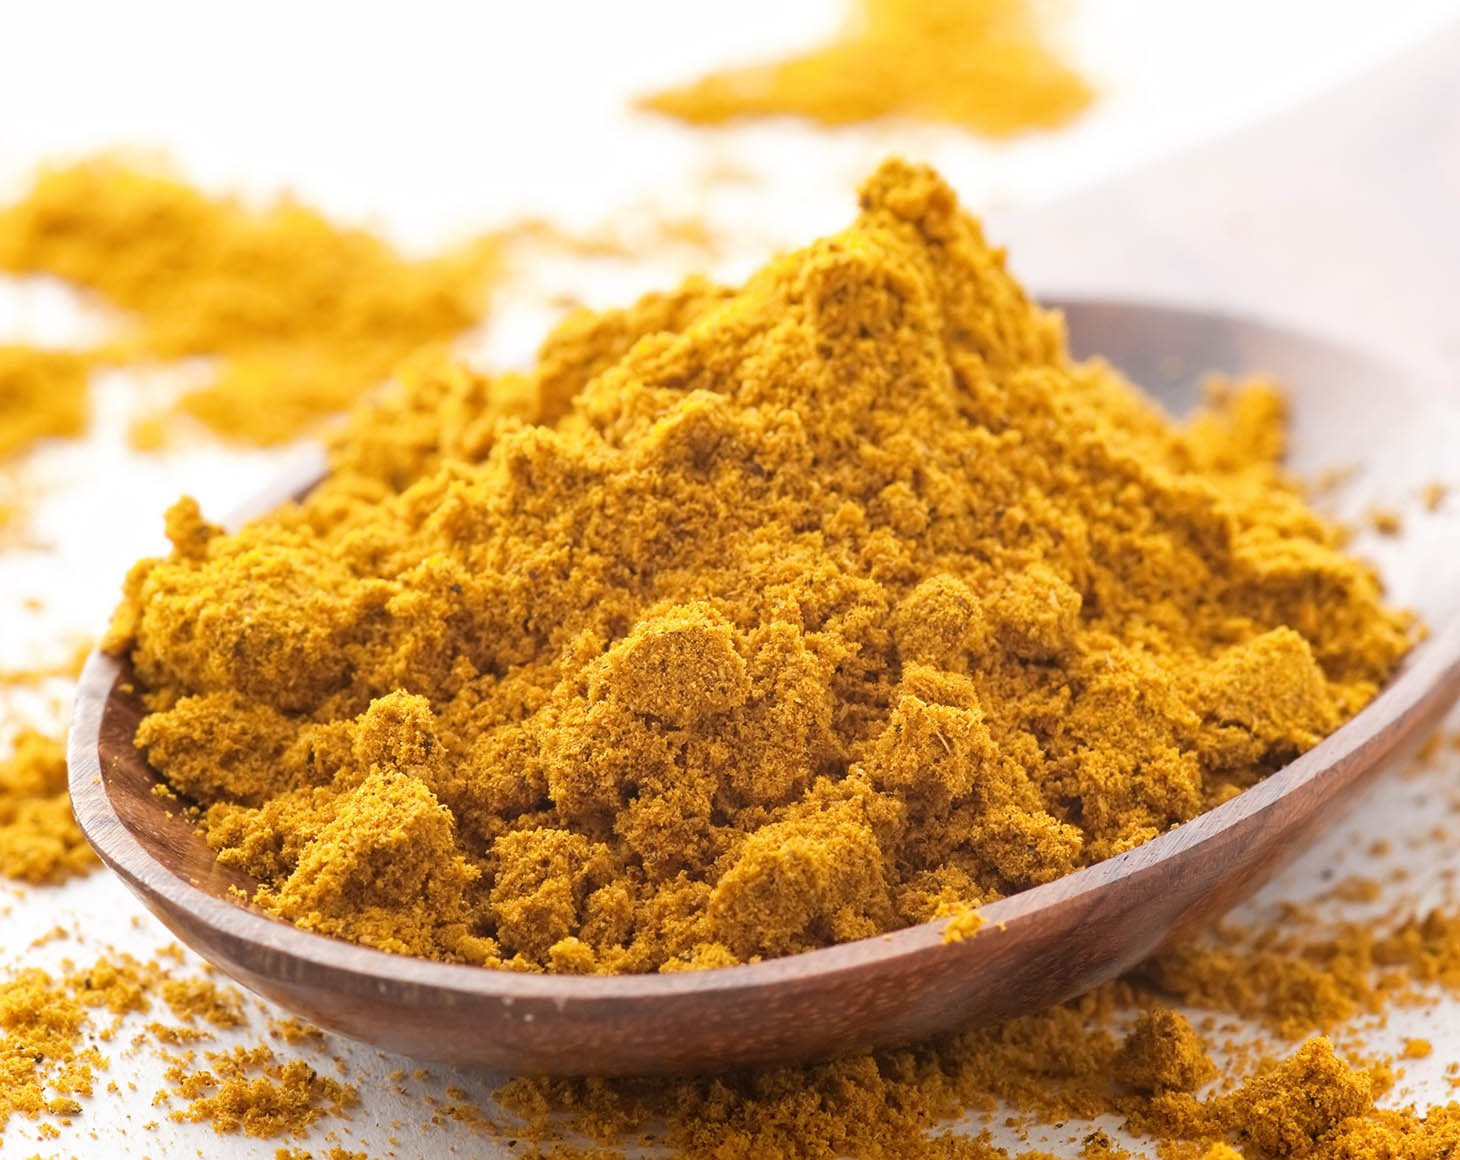 mild-curry-powder